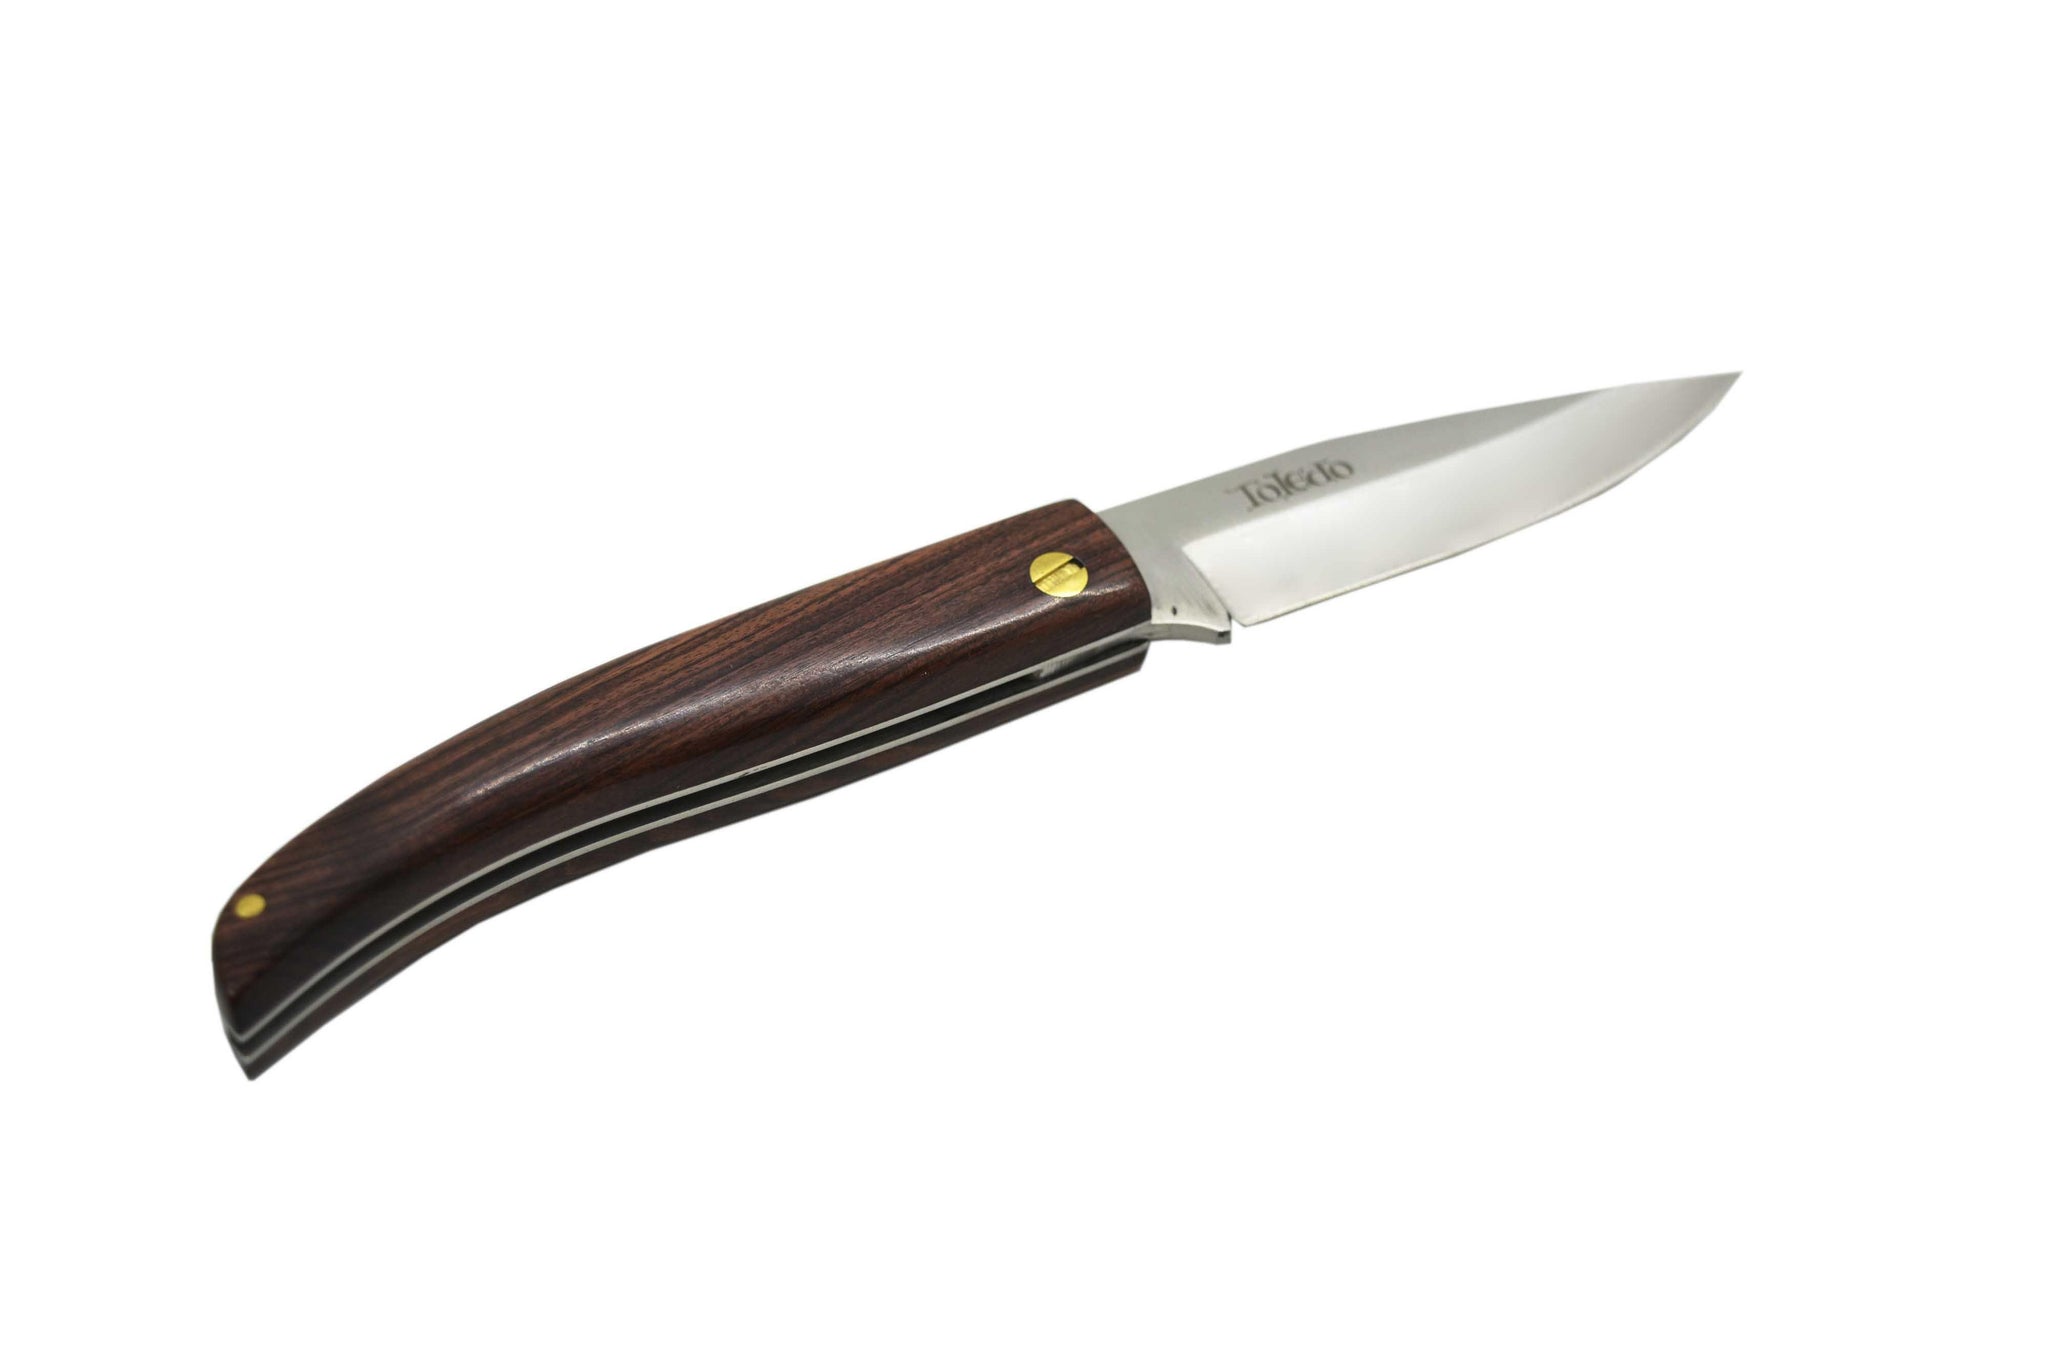 NAVAJAS MUELA ZX - pocketknives hunting - Muela - Wholesale Knives